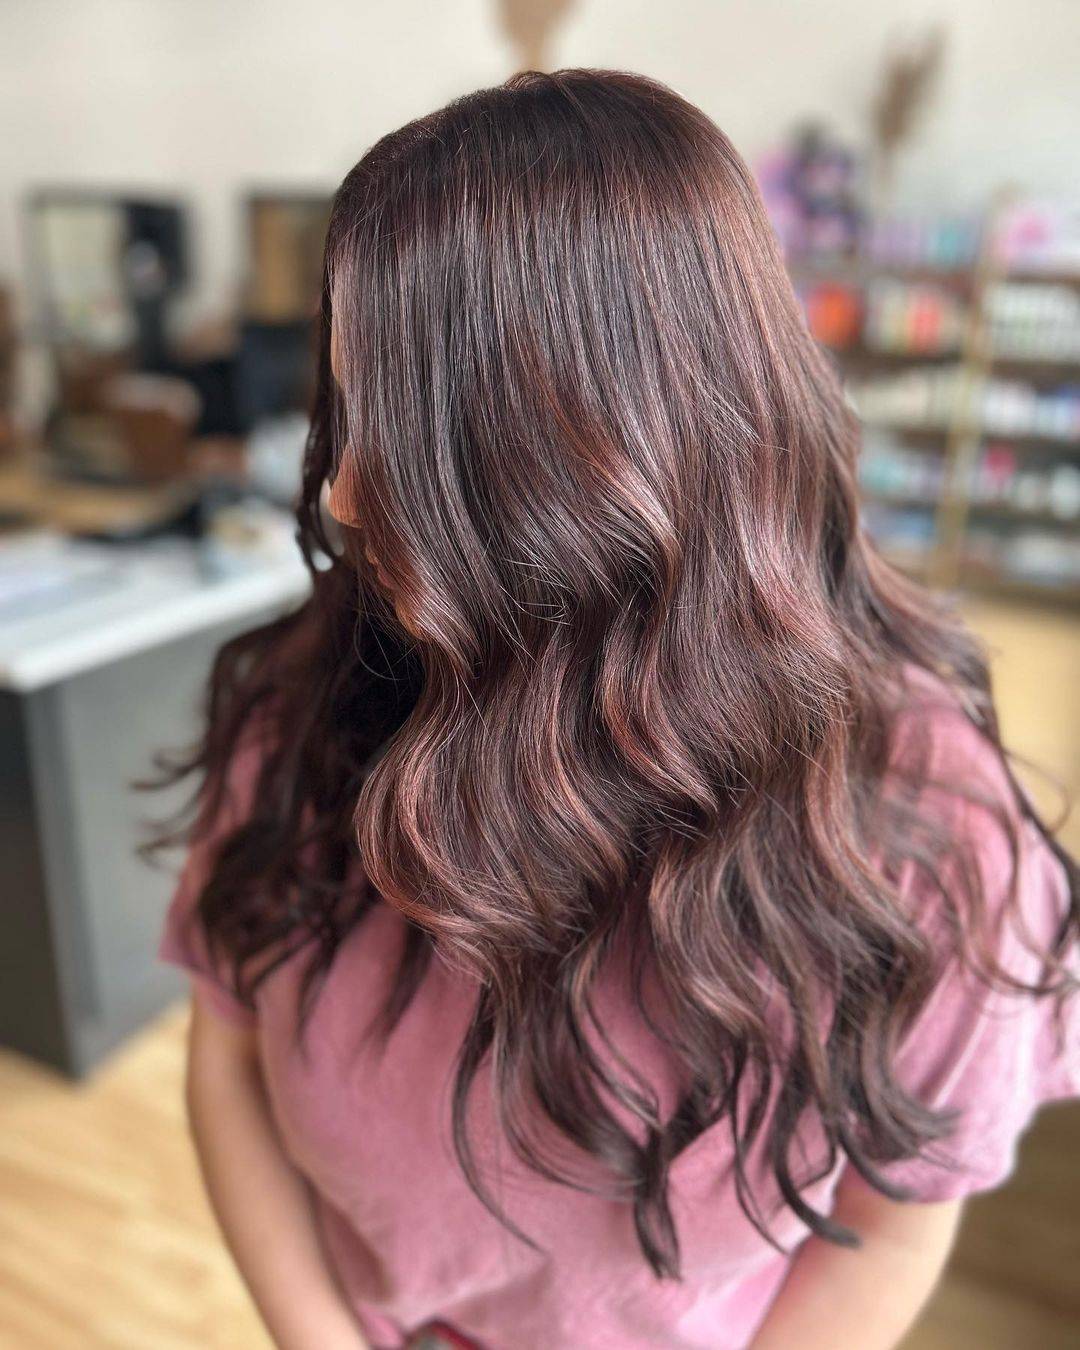 Burgundy hair color 314 burgundy hair color | burgundy hair color for women | burgundy hair color highlights Burgundy Hair Color